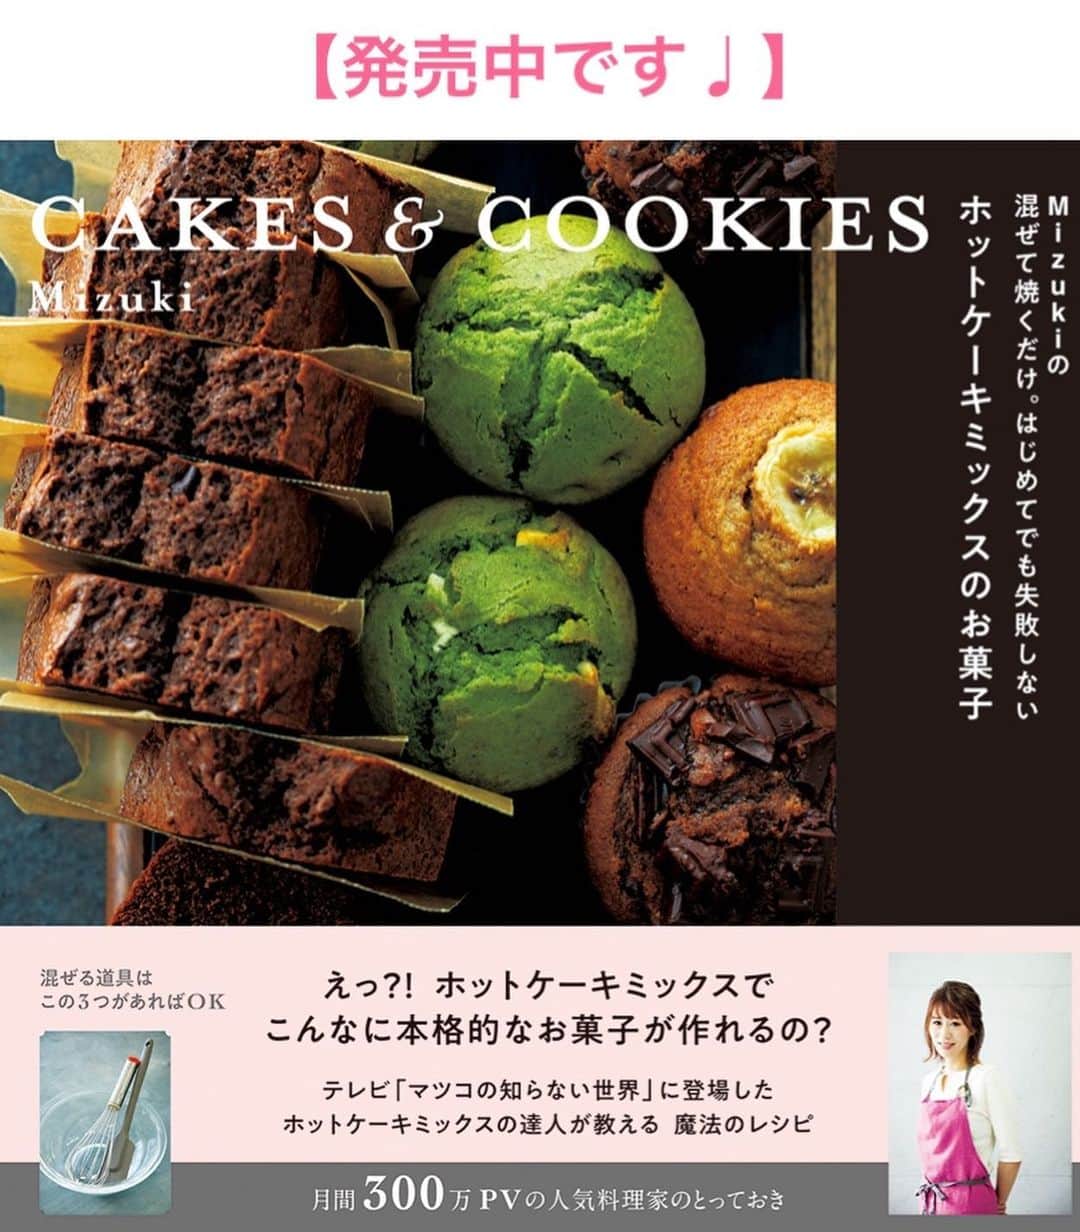 Mizuki【料理ブロガー・簡単レシピ】さんのインスタグラム写真 - (Mizuki【料理ブロガー・簡単レシピ】Instagram)「・﻿ 【レシピ】ーーーーーーーーー﻿ ホットケーキミックスで！﻿ ♡チョコチャンクスコーン♡﻿ ーーーーーーーーーーーーーー﻿ ﻿ ﻿ おはようございます(*^^*)﻿ ﻿ 今日はまたまた超簡単ホケミスイーツ♩﻿ たった4つの材料でできる﻿ チョコチャンクスコーンのご紹介です♡﻿ 生地はポリ袋で作れて﻿ とってもお手軽ですよ〜(*´艸`)﻿ ﻿ 今回は市販のホットケーキミックスと﻿ 自家製ホットケーキミックスの﻿ 両方で作ってみました(*^^*)﻿ (工程写真はどちらも掲載しています☆)﻿ 自家製ミックスで作る際は﻿ レシピ下の《ポイント》をご覧下さいね♩﻿ →#自家製ホットケーキミックスm﻿ ﻿ ﻿ ﻿ ーーーーーーーーーーーーーーーーーーーー﻿ 【6個分】﻿ ホットケーキミックス...150g﻿ 牛乳・サラダ油...各大2﻿ 板チョコ...1枚(50g)﻿ ﻿ (準備)チョコは適当に割る。オーブンは180度に予熱する。﻿ 1.ポリ袋にホットケーキミックス、牛乳、サラダ油を入れ、袋の外から揉む。粉っぽさがなくなってきたらチョコ(飾り用に少し残す)も加え、更に揉んでまとめる。﻿ 2.生地を取り出し、手で10cm大の丸型に伸ばし、6等分に切って残りのチョコをのせる。﻿ 3.クッキングシートを敷いた天板に間隔を空けて並べ、予熱したオーブンで15分焼く。﻿ ーーーーーーーーーーーーーーーーーーーー﻿ ﻿ ﻿ 《ポイント》﻿ ♦︎使用するホットケーキミックスにより生地がまとまらない場合は、牛乳、サラダ油を少し追加して下さい☆ ♦︎自家製ホットケーキミックスで作る場合は、牛乳を少しだけ増やして下さい♩(生地をまとめた時に崩れないくらいの柔らかさが目安です♩)﻿ ﻿ ﻿ ﻿ ﻿ ＿＿＿＿＿＿＿＿＿＿＿＿＿＿＿＿＿﻿ ＿＿＿＿＿＿＿＿＿＿＿＿＿＿＿＿＿﻿ 🎀発売中🎀﻿ 【#ホットケーキミックスのお菓子 】﻿ ﻿ 一冊まるっとホケミスイーツ♩﻿ 普段のおやつから﻿ 特別な日にも使えるレシピを﻿ この一冊に詰め込みました(*^^*)﻿ ホットケーキミックスを使えば﻿ 簡単に本格的なお菓子が作れますよ♡﻿ ﻿ 🔹ハイライト、ストーリーに﻿ リンクを貼っています🔹﻿ ＿＿＿＿＿＿＿＿＿＿＿＿＿＿＿＿＿﻿ ＿＿＿＿＿＿＿＿＿＿＿＿＿＿＿＿＿﻿ ﻿ ﻿ ﻿ ＿＿＿＿＿＿＿＿＿＿＿＿＿＿＿＿＿＿＿﻿ 📕\ \ 新刊発売中 / /📕﻿ 簡単・時短！ 毎日のごはんがラクになる﻿ ✨🦋 【 #Mizukiの今どき和食 】🦋✨﻿ ＿＿＿＿＿＿＿＿＿＿＿＿＿＿＿＿＿＿＿﻿ ﻿ なるべく少ない材料で﻿ 手間も時間も省きながら﻿ 簡単にできるおいしい和食レシピ♩﻿ 簡単に失敗なくマスターできる一冊で﻿ もっと気軽に、カジュアルに﻿ 和食を楽しんで下さいね(*^^*)﻿ ﻿ ﻿ ーーー ⭐️PART.1 メインおかず ⭐️ーーー﻿ 素材別にレシピをご紹介しています♩﻿ 和食の定番から新定番まで﻿ どれも押さえておきたいメニューばかり。﻿ 肉じゃがはフライパンで！焼き豚はレンジで！﻿ ぶり大根は切り身を使って手軽に作ります♩﻿ ﻿ ーーー ☘️PART.2 サブおかず ☘️ーーー﻿ 年中手に入るお手頃野菜と﻿ 乾物や大豆、こんにゃくなどを使った﻿ 副菜レシピをたっぷり掲載！！﻿ 普段SNSではメインおかずばかりなので﻿ 本では副菜にも力を入れています(*^^*)﻿ ﻿ ーーー 🌸PART.3 ごはんと汁物 🌸ーーー﻿ ささっと作れる丼と麺、﻿ みんなで食べたいいなり寿司や﻿ 手巻きごはんもご紹介！﻿ 複数の炊き込みごはんと﻿ 味噌汁&和風スープも盛りだくさん！﻿ ﻿ ﻿ 各レシピのポイントは﻿ 【写真付きで丁寧に解説】﻿ 副菜レシピもたっぷりなので﻿ 【メインページに副菜メモもつけました】﻿ ＊このメインにはこの副菜が合いますよ〜﻿ という献立の提案です(*^^*)﻿ 【その他コラムも充実】﻿ 全127品中ほぼ全て﻿ 【本だけのレシピです！】﻿ ﻿ ＿＿＿＿＿＿＿＿＿＿＿＿＿＿＿＿＿＿＿﻿ ﻿ ⭐️ストーリー、ハイライト、プロフ画面に﻿ 本のURLを貼らせていただいております♩﻿ →(@mizuki_31cafe )﻿ ﻿ ＿＿＿＿＿＿＿＿＿＿＿＿＿＿＿＿＿＿＿﻿ ﻿ ﻿ ﻿ ﻿ #ホットケーキミックス#スコーン#チョコスコーン#ポリ袋#ホットケーキミックスのお菓子#コスパ#うちで過ごそう#おうち時間#Mizuki#簡単レシピ#時短レシピ#節約レシピ#料理#レシピ#フーディーテーブル#おうちごはん#おうちカフェ#デリスタグラマー#料理好きな人と繋がりたい#おうちごはんlover#foodpic#follow#cooking#recipe#lin_stagrammer#stayhome#チョコチャンクスコーンm」4月20日 7時09分 - mizuki_31cafe